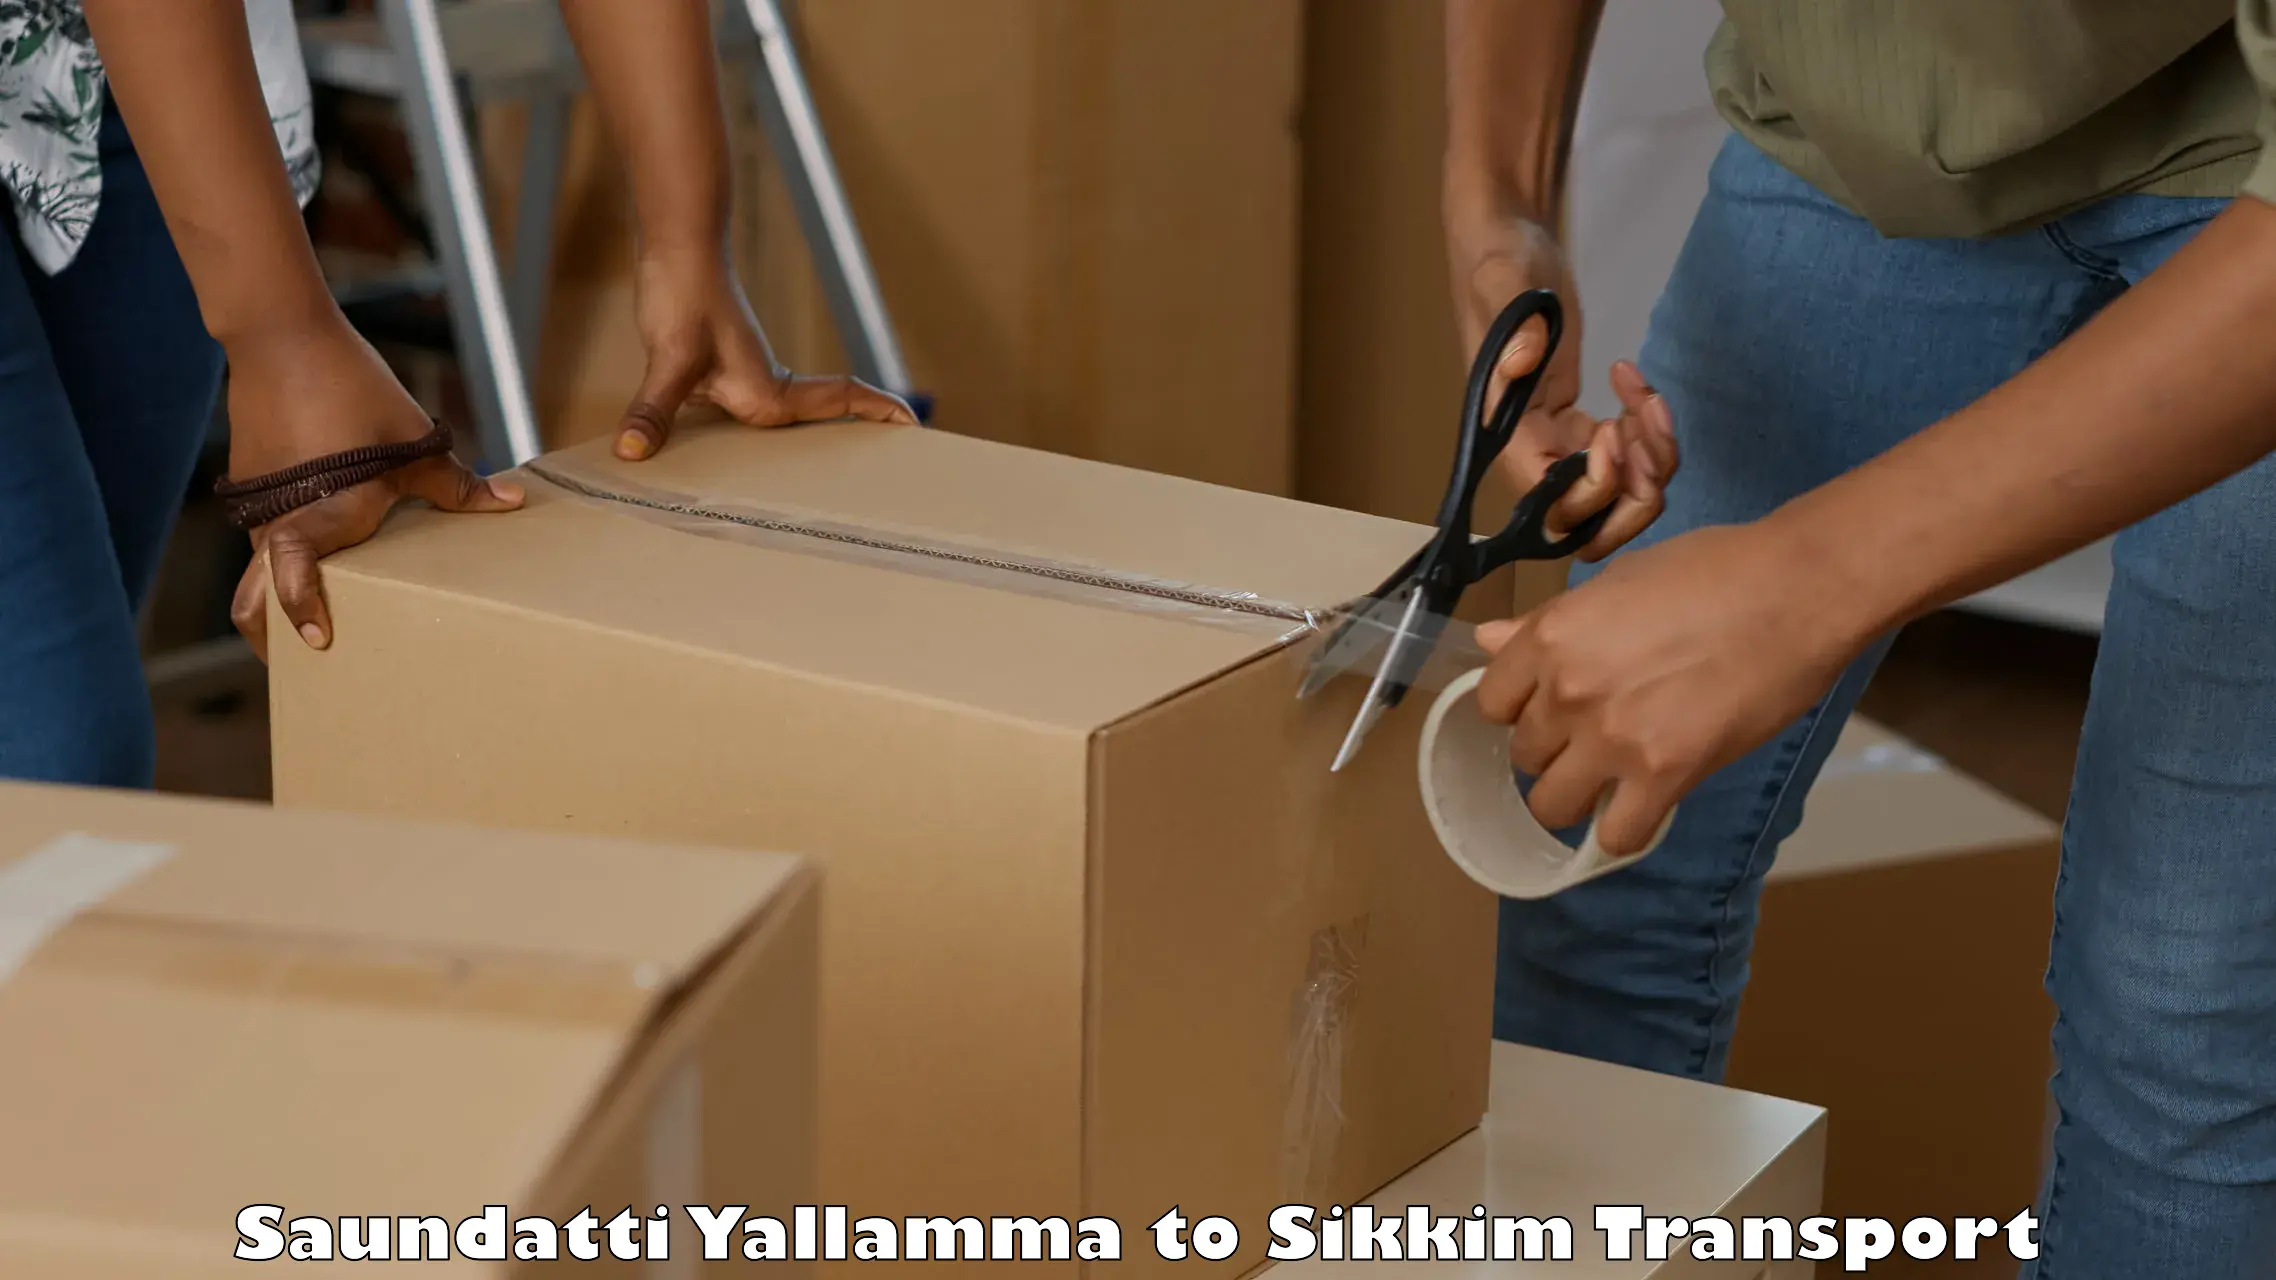 Shipping partner Saundatti Yallamma to Pelling